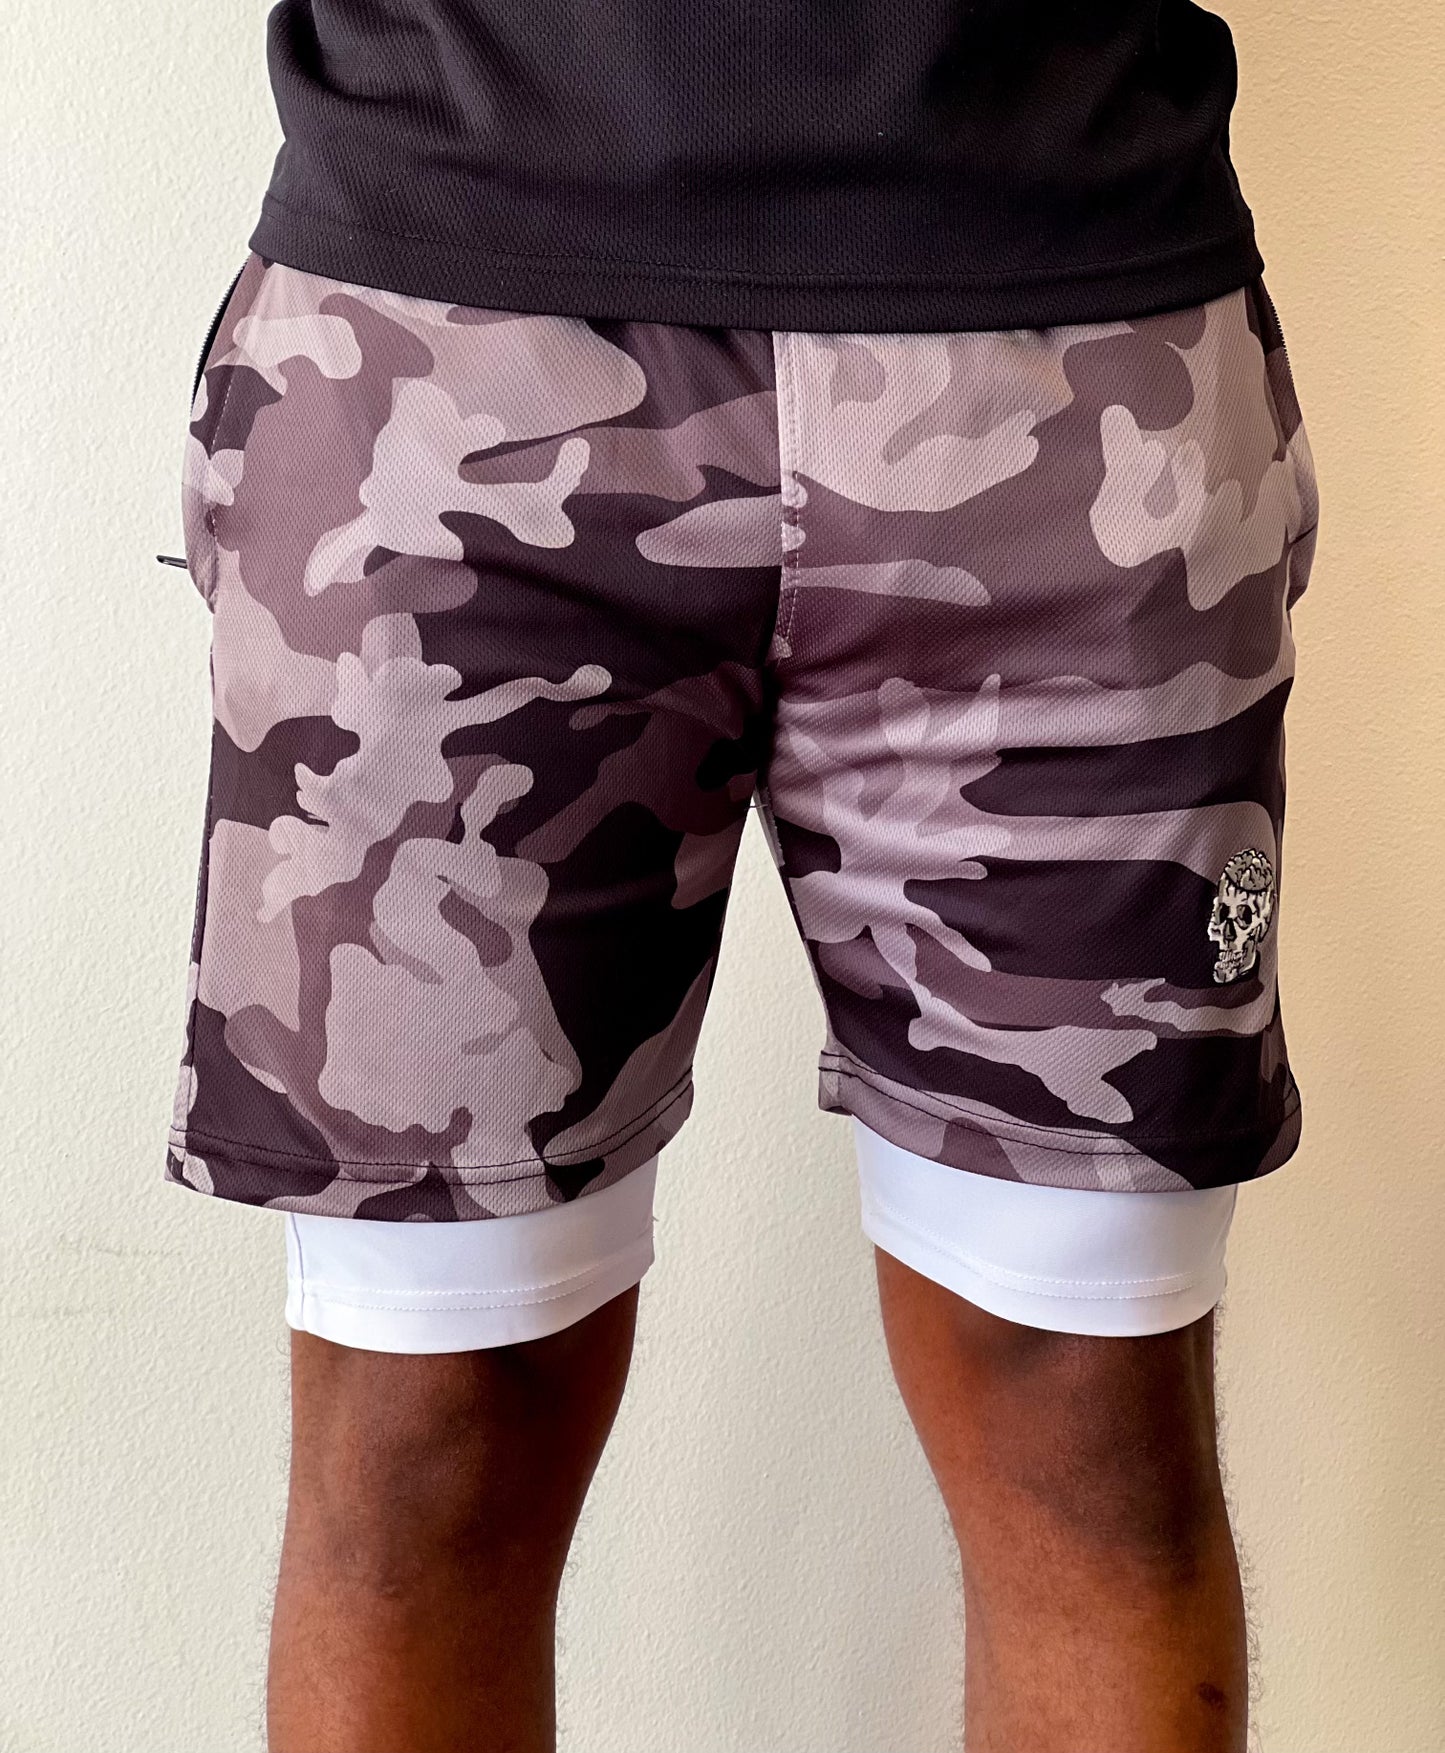 GoldMind$ Black Athletic shorts